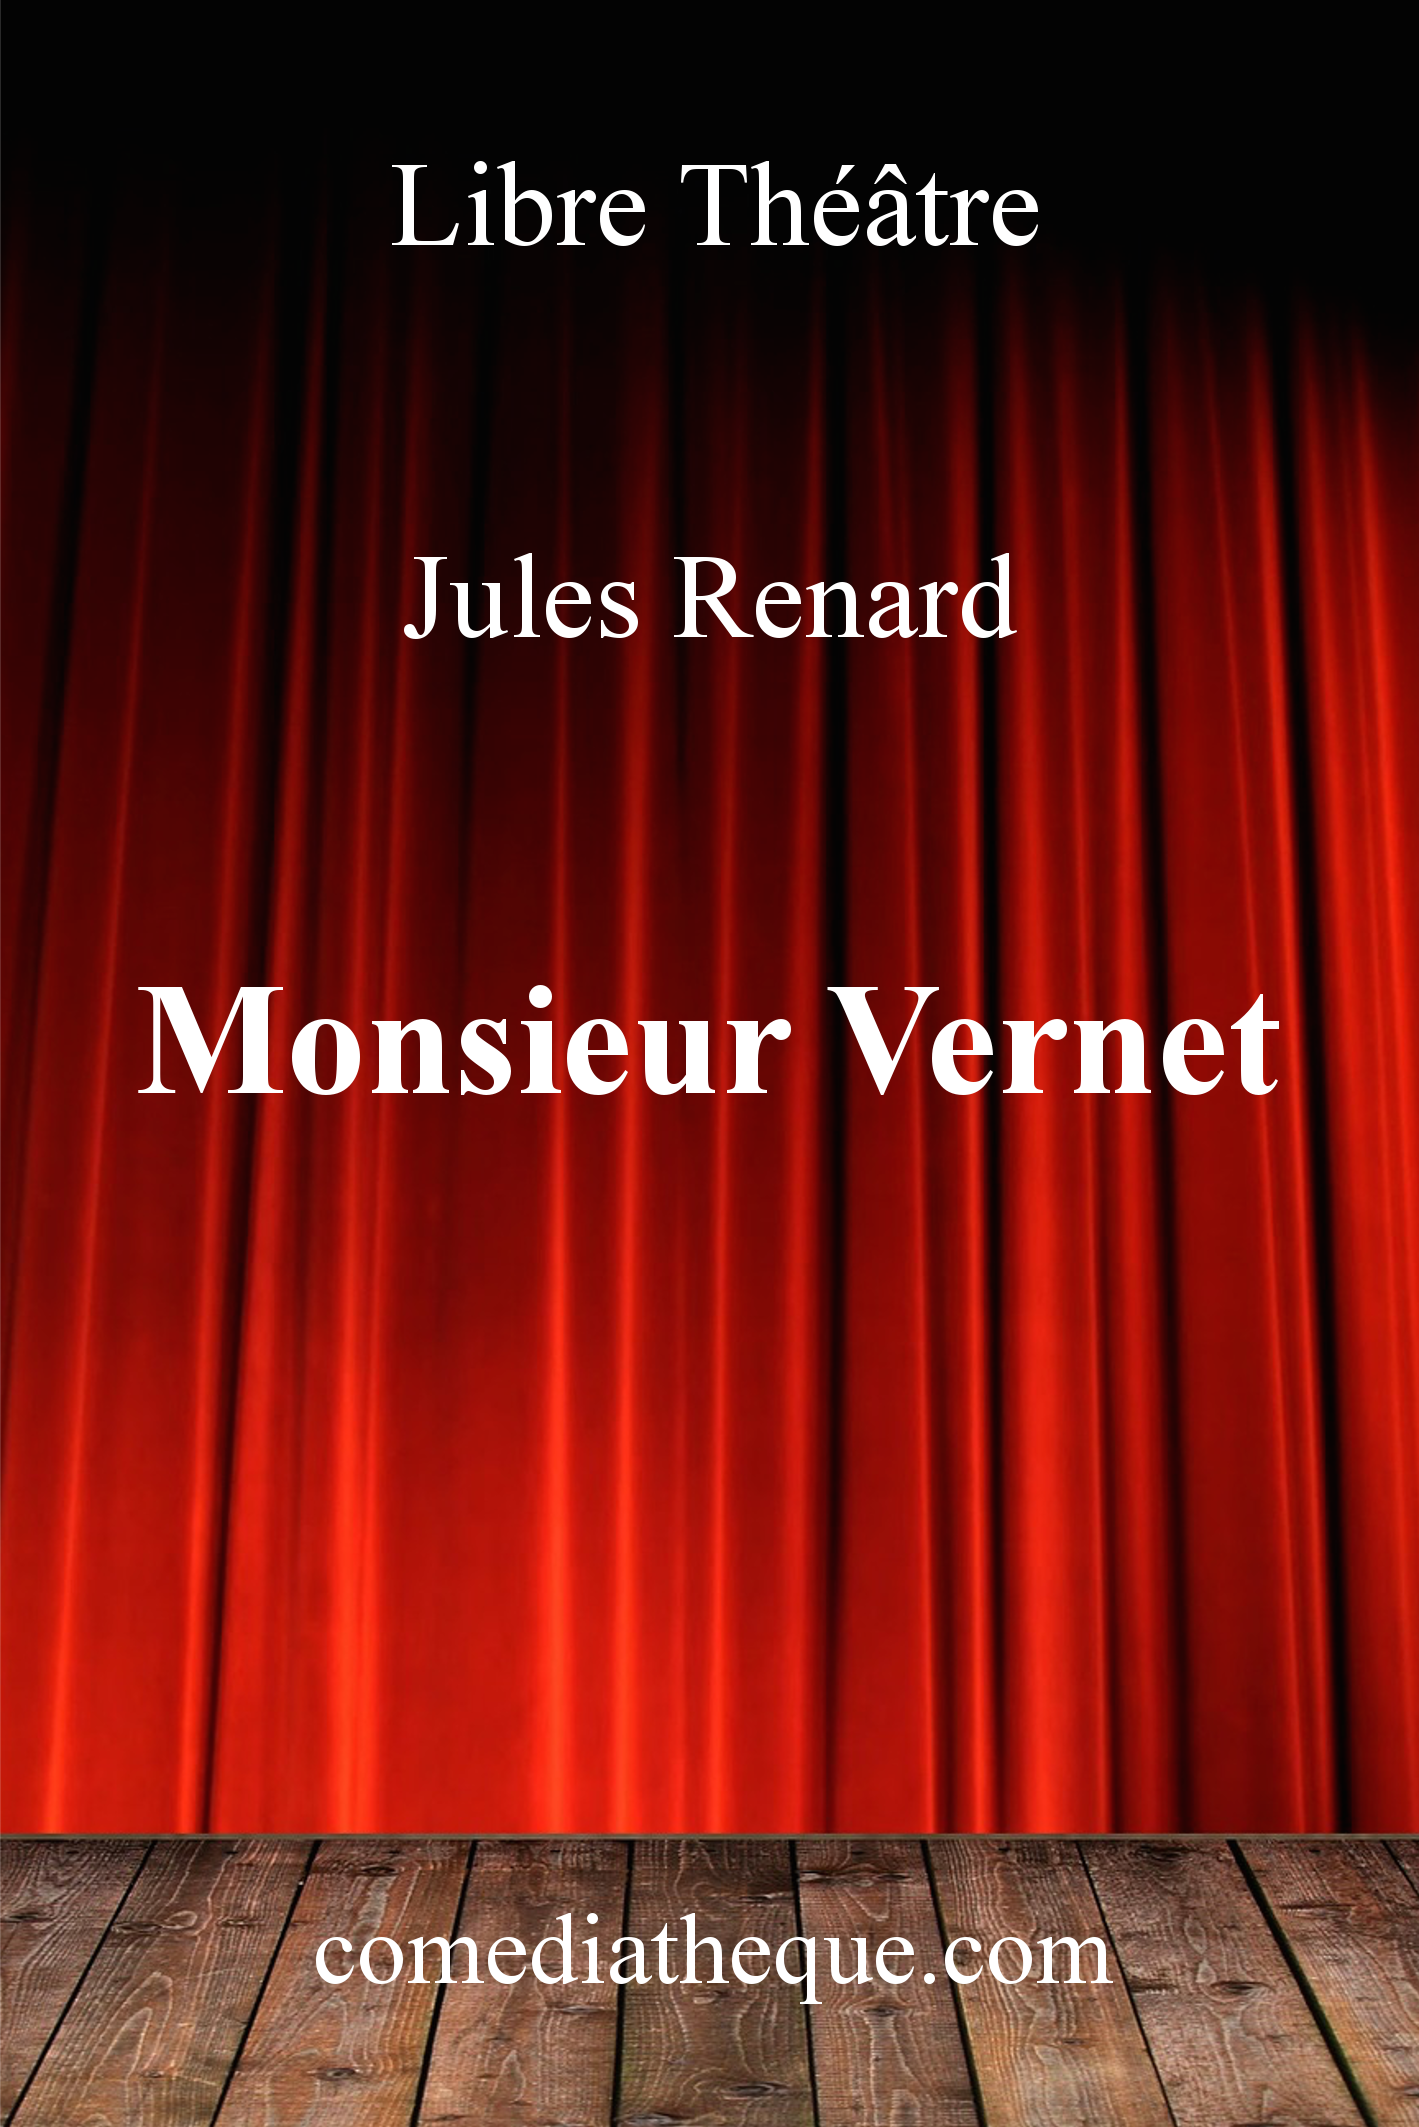 Monsieur Vernet